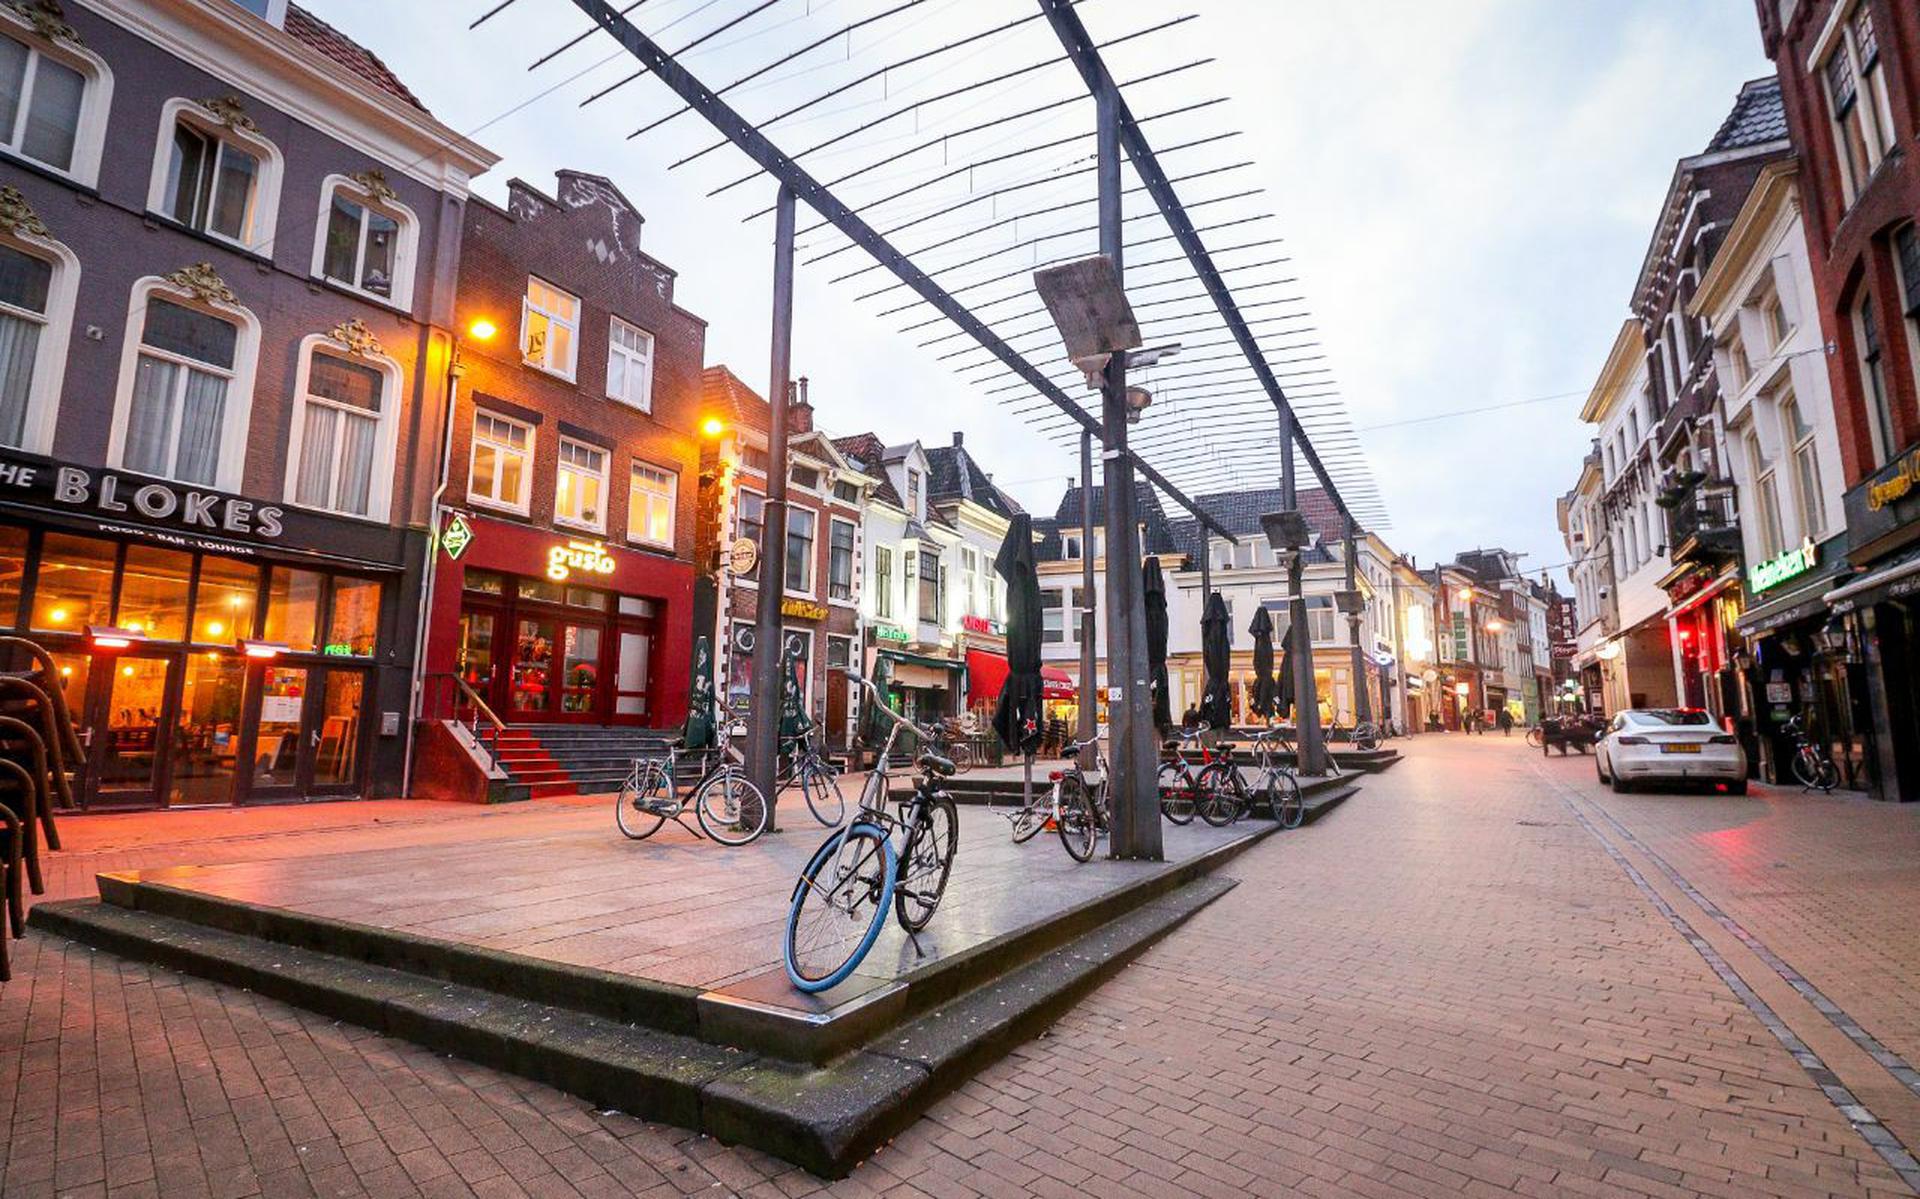 Stilte in de binnenstad van Groningen.